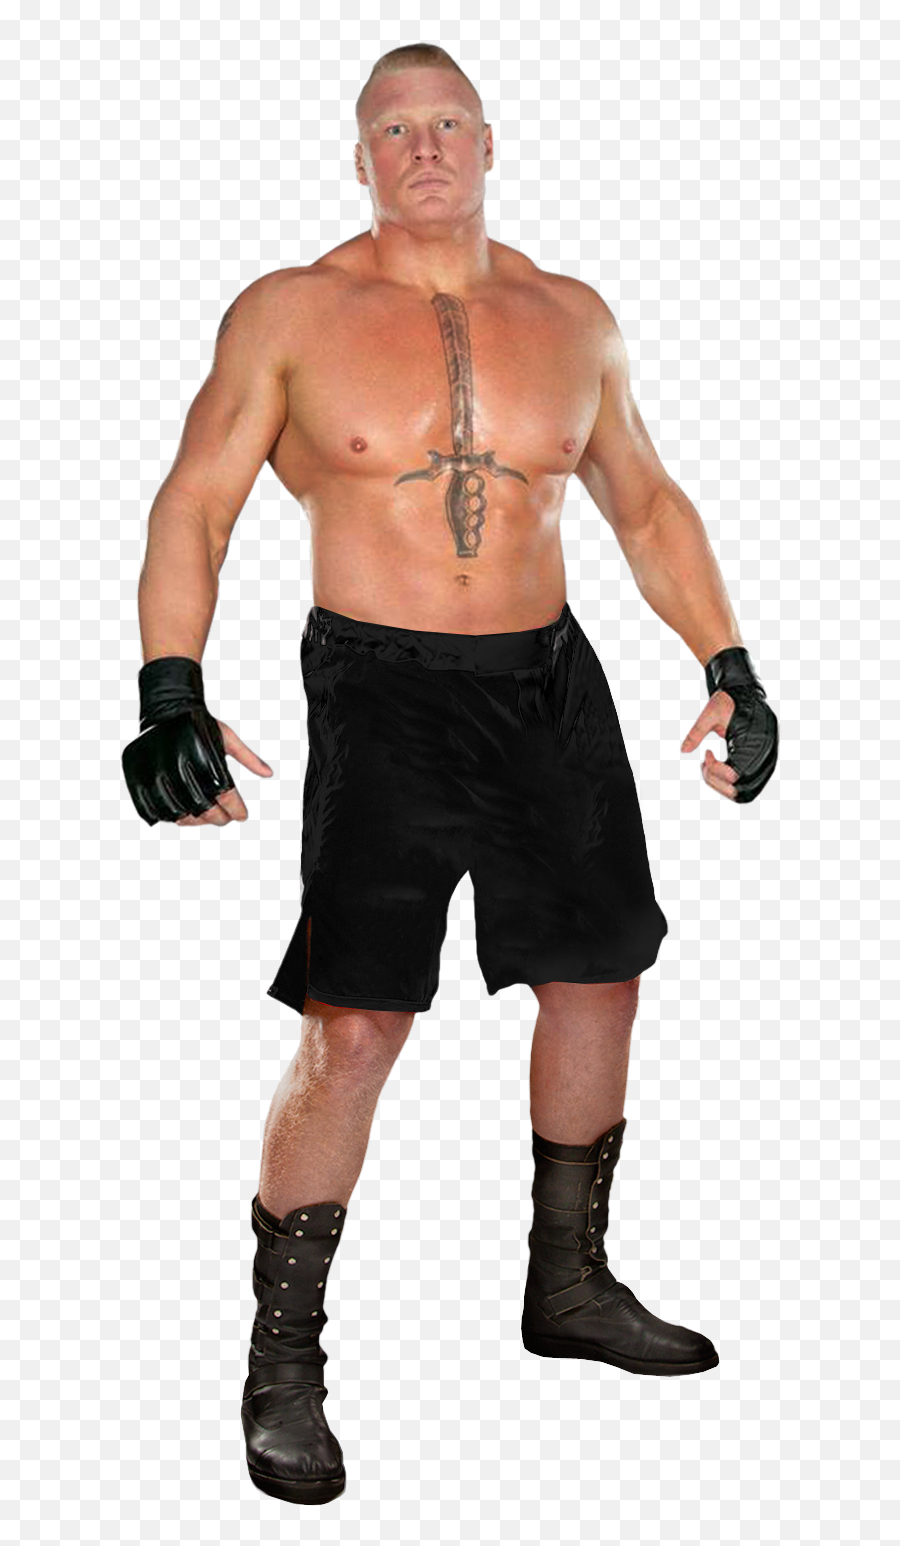 Brock Lesnar - Brock Lesnar World Heavyweight Champion Png,Brock Lesnar Transparent